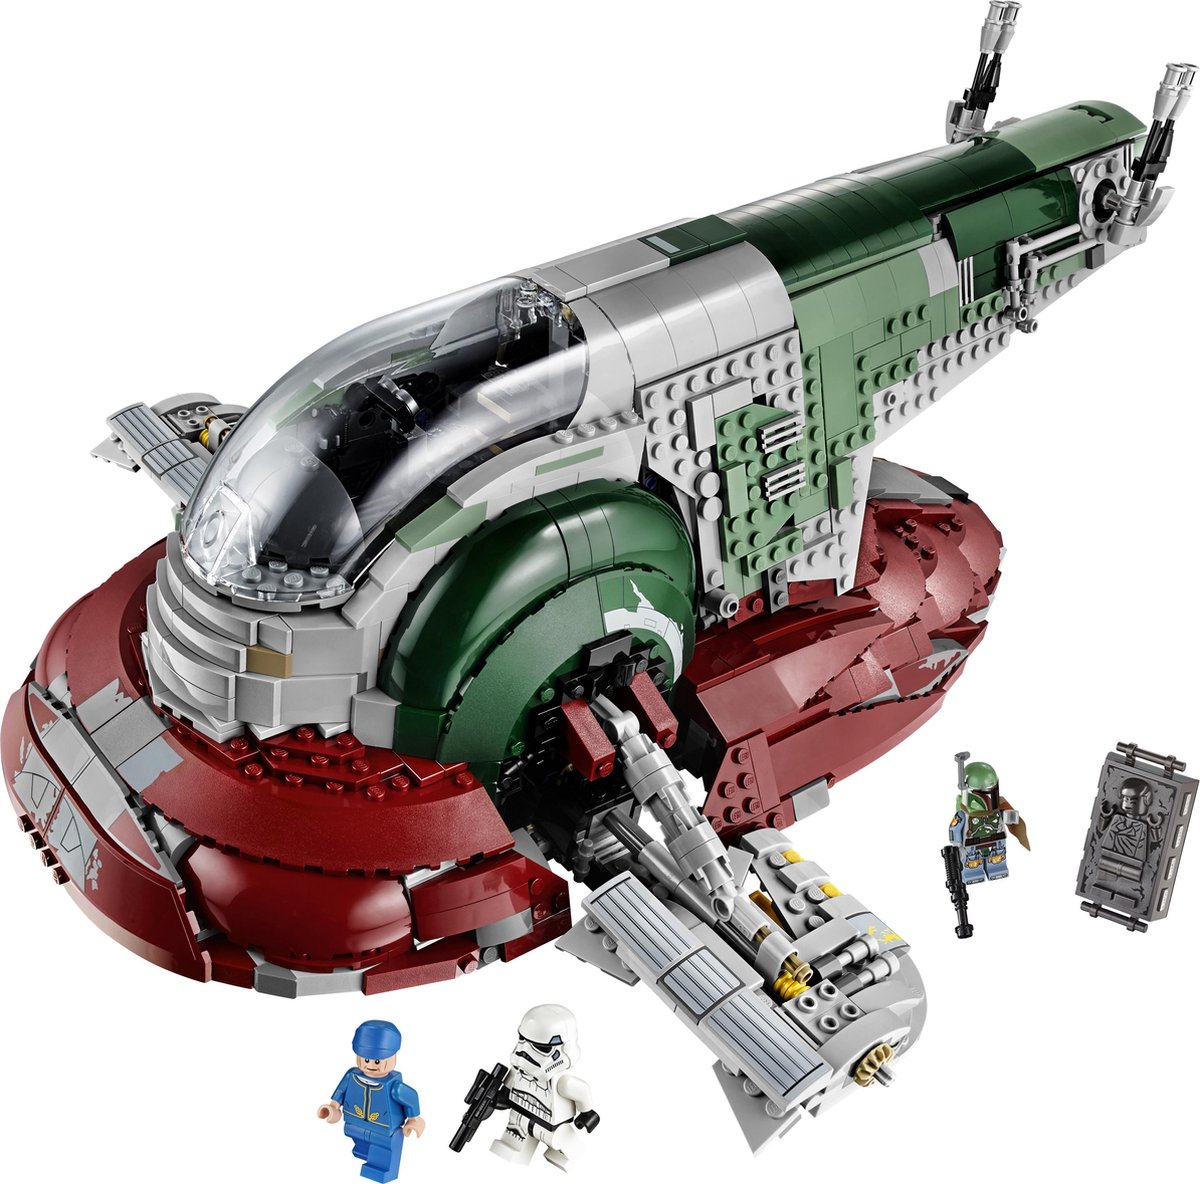 Lego commercialise un vaisseau de Star Wars de près de 5 000 pièces